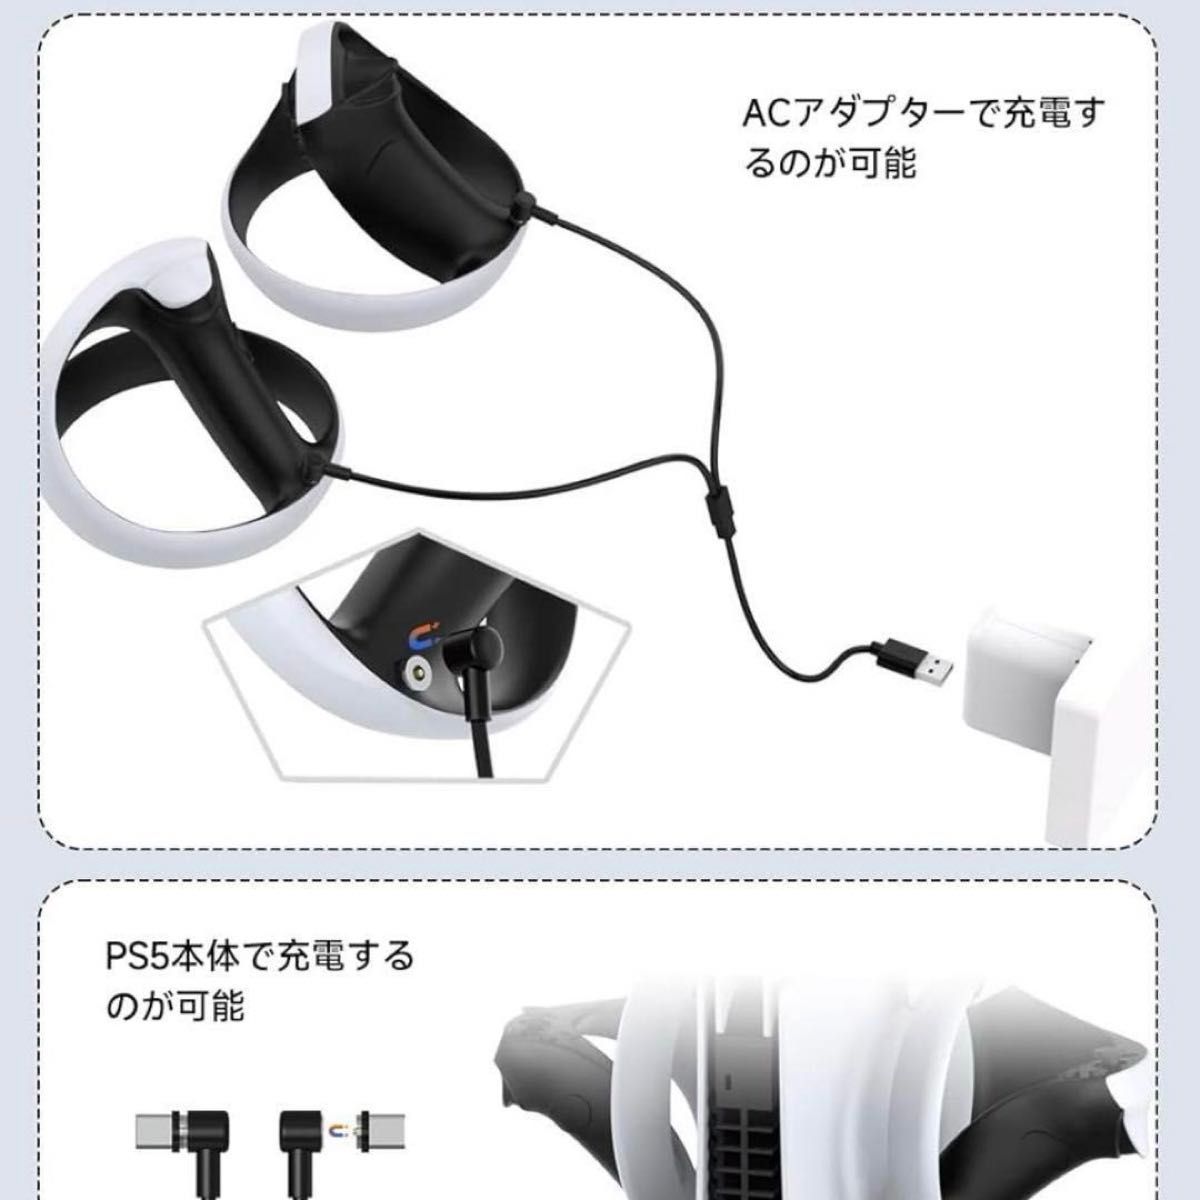 PS VR2用のUSB磁気充電ケーブル Play*station VR2